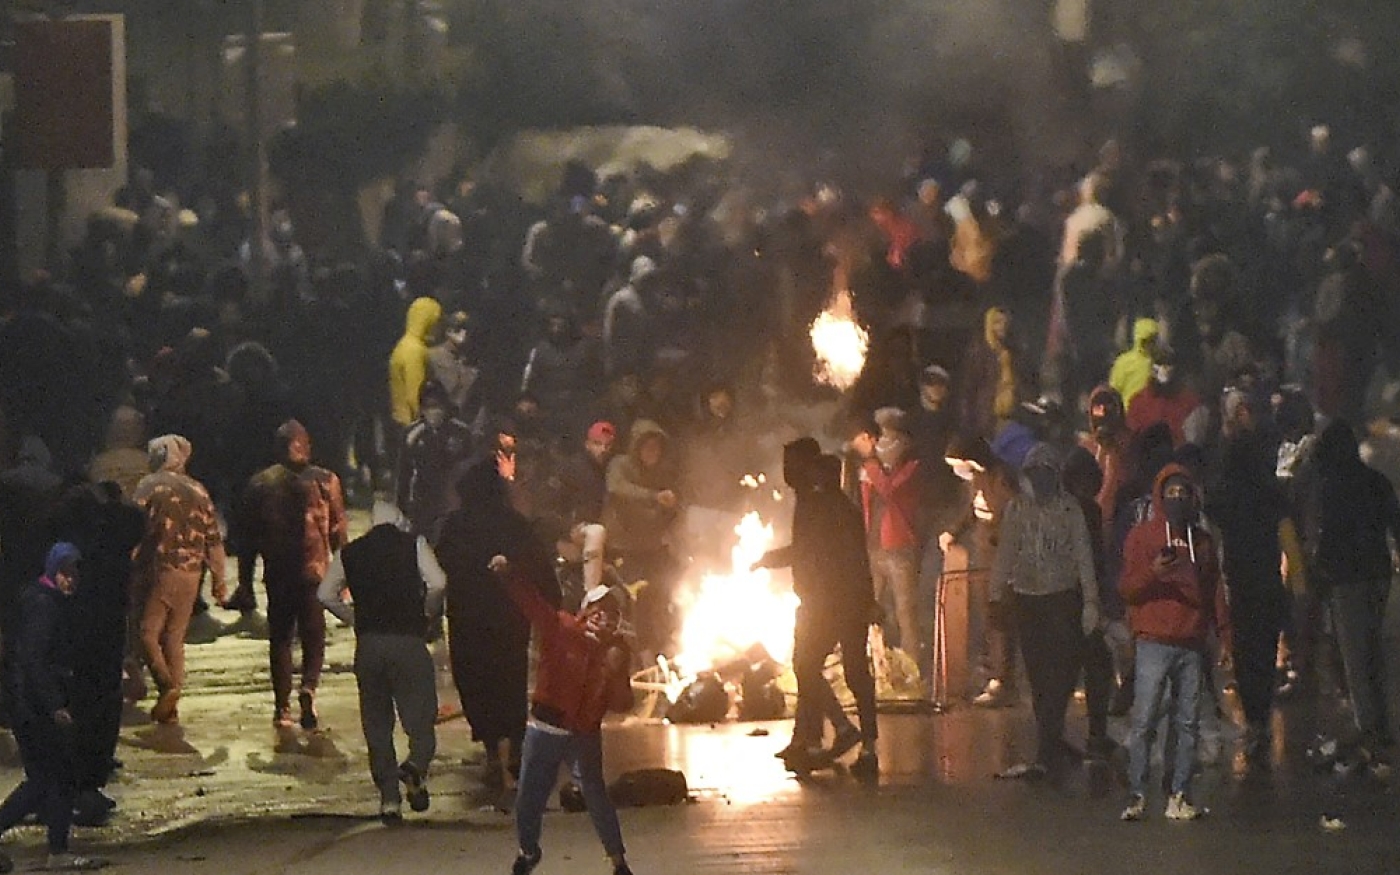 Des manifestants bloquent une rue lors d’affrontements avec les forces de l’ordre, à Ettadhamen, le 18 janvier 2021 (AFP)